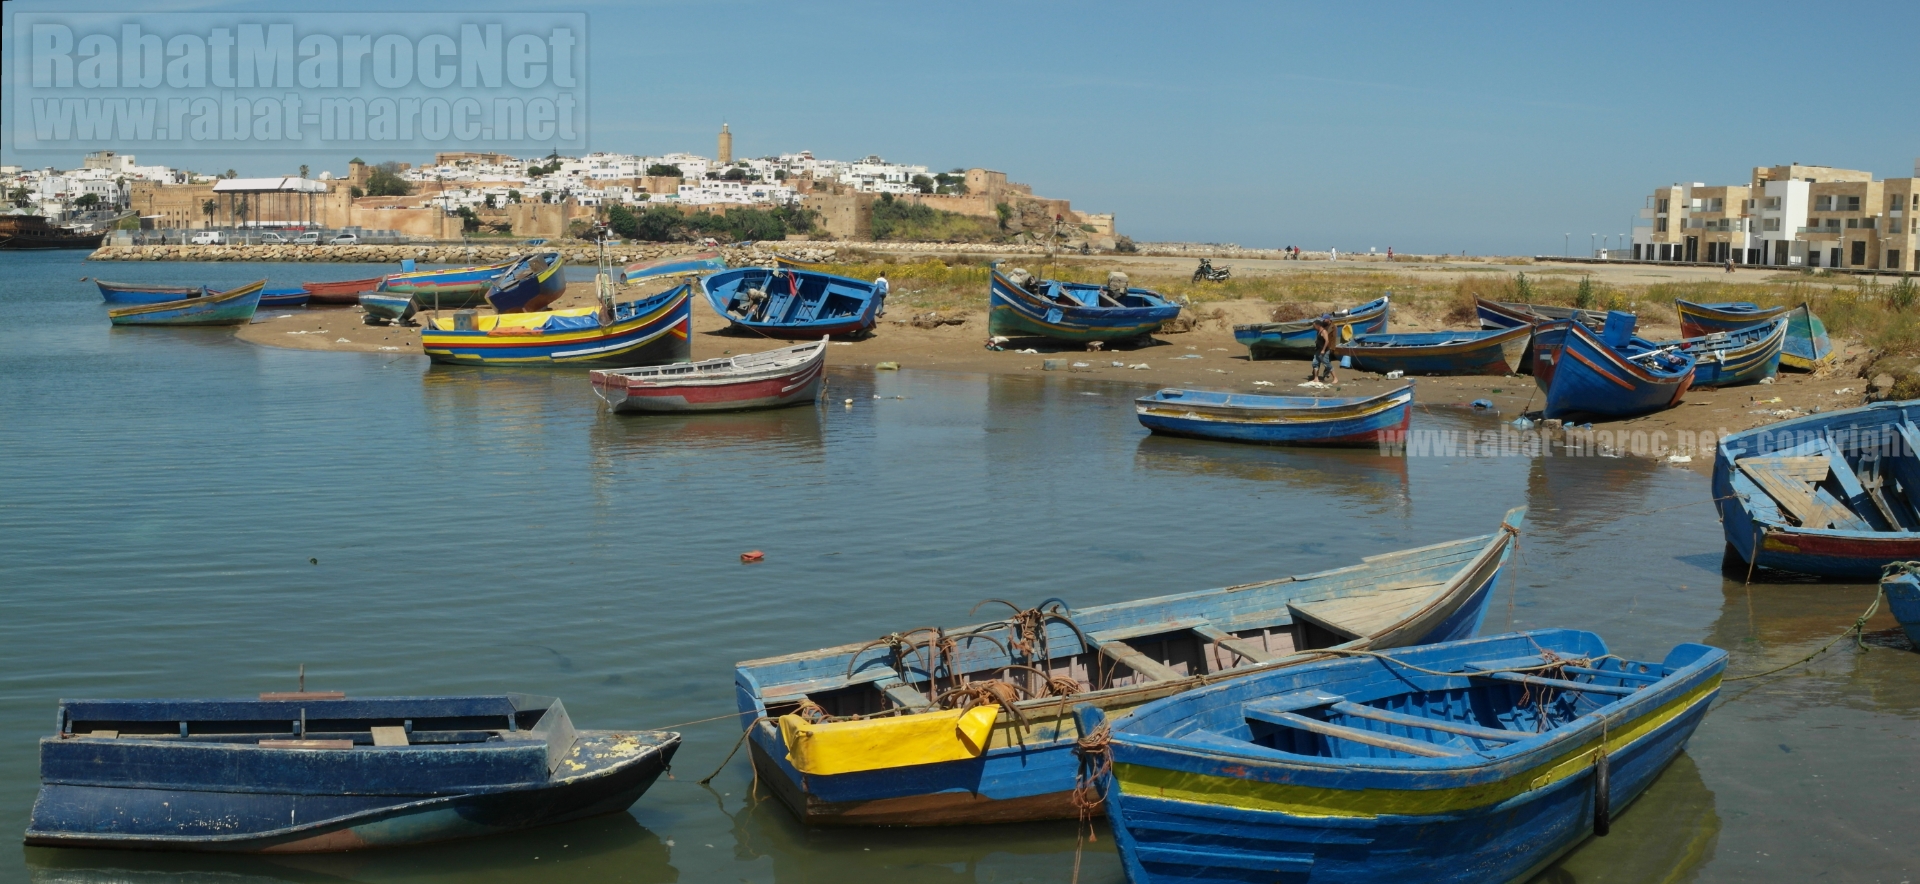 barques rive droite bouregreg bab al bahr sur fond oudayas